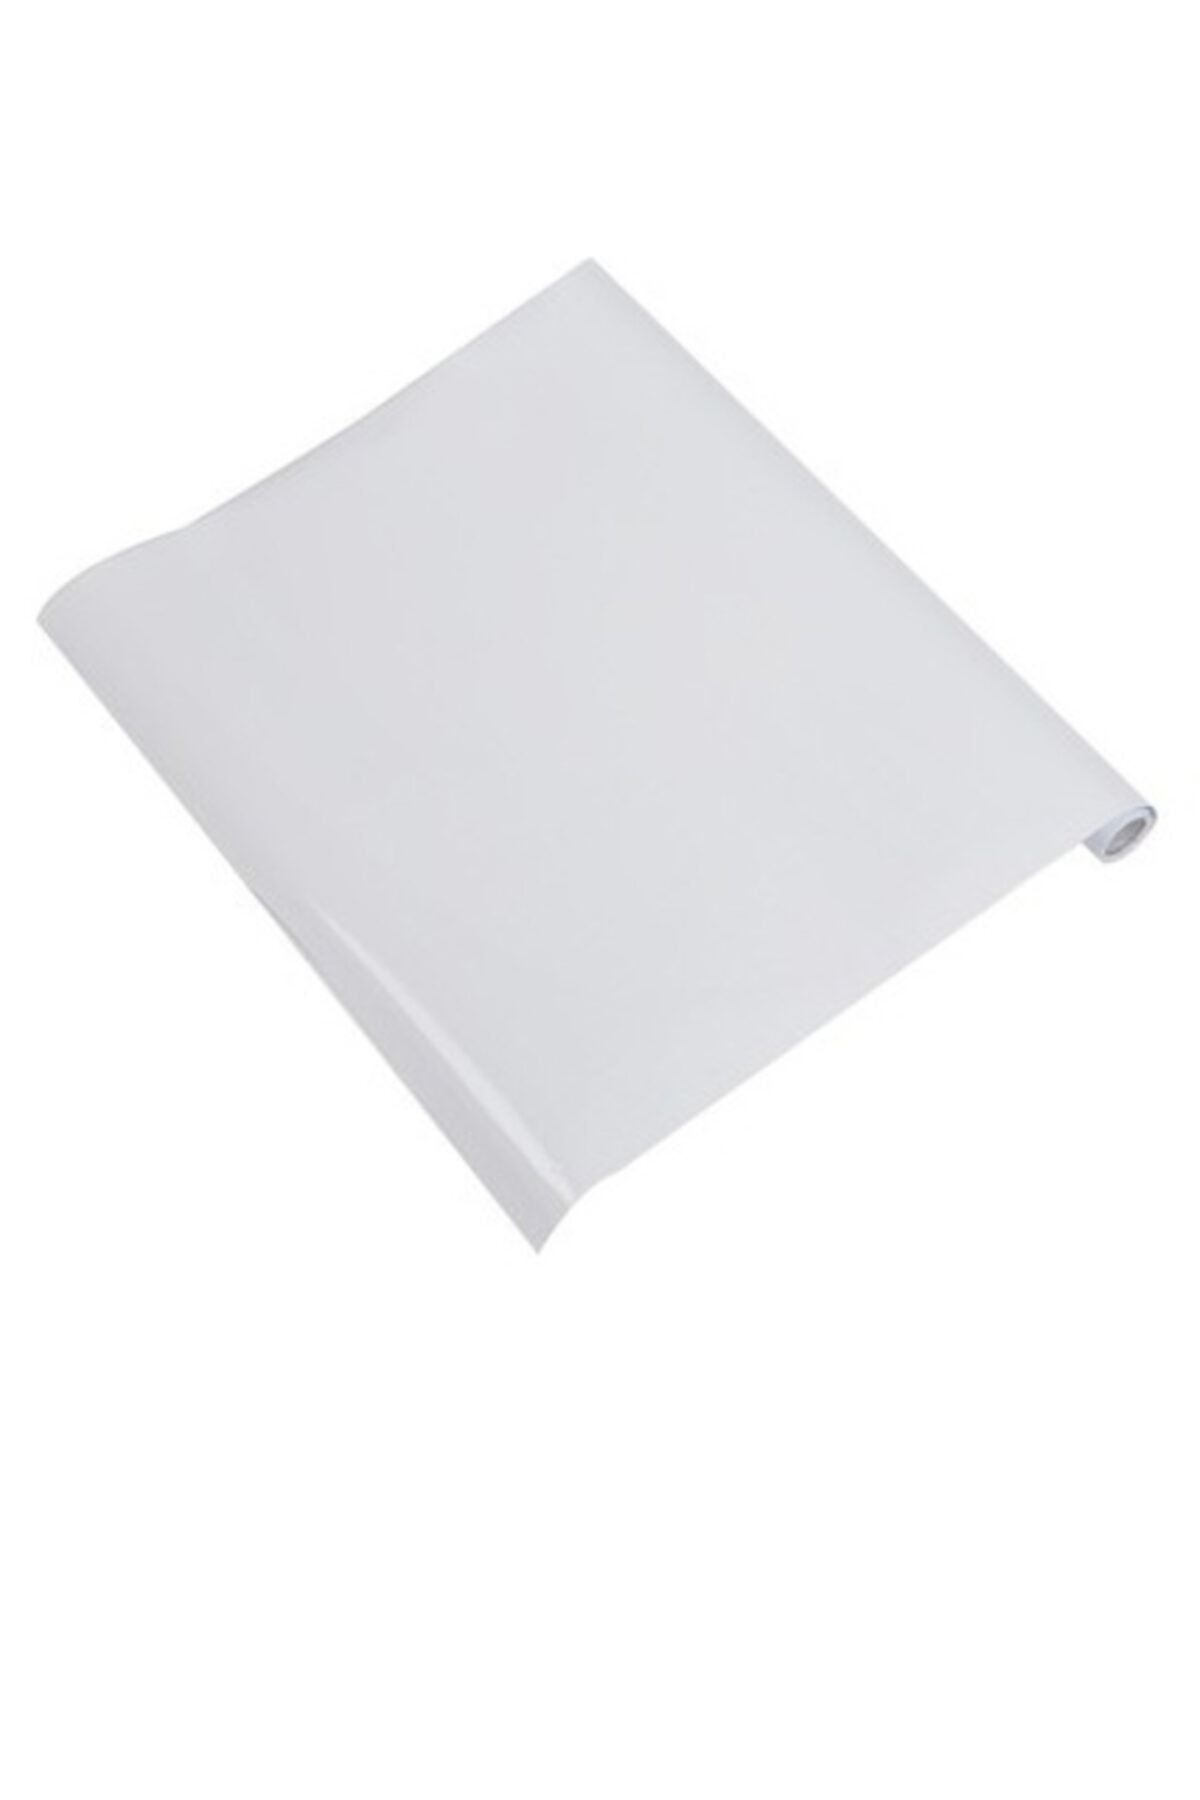 Kaizen Market Sihirli Tahta Beyaz Akıllı Kağıt Tahta 2'li + Silgili Kalem 60 x 100 cm